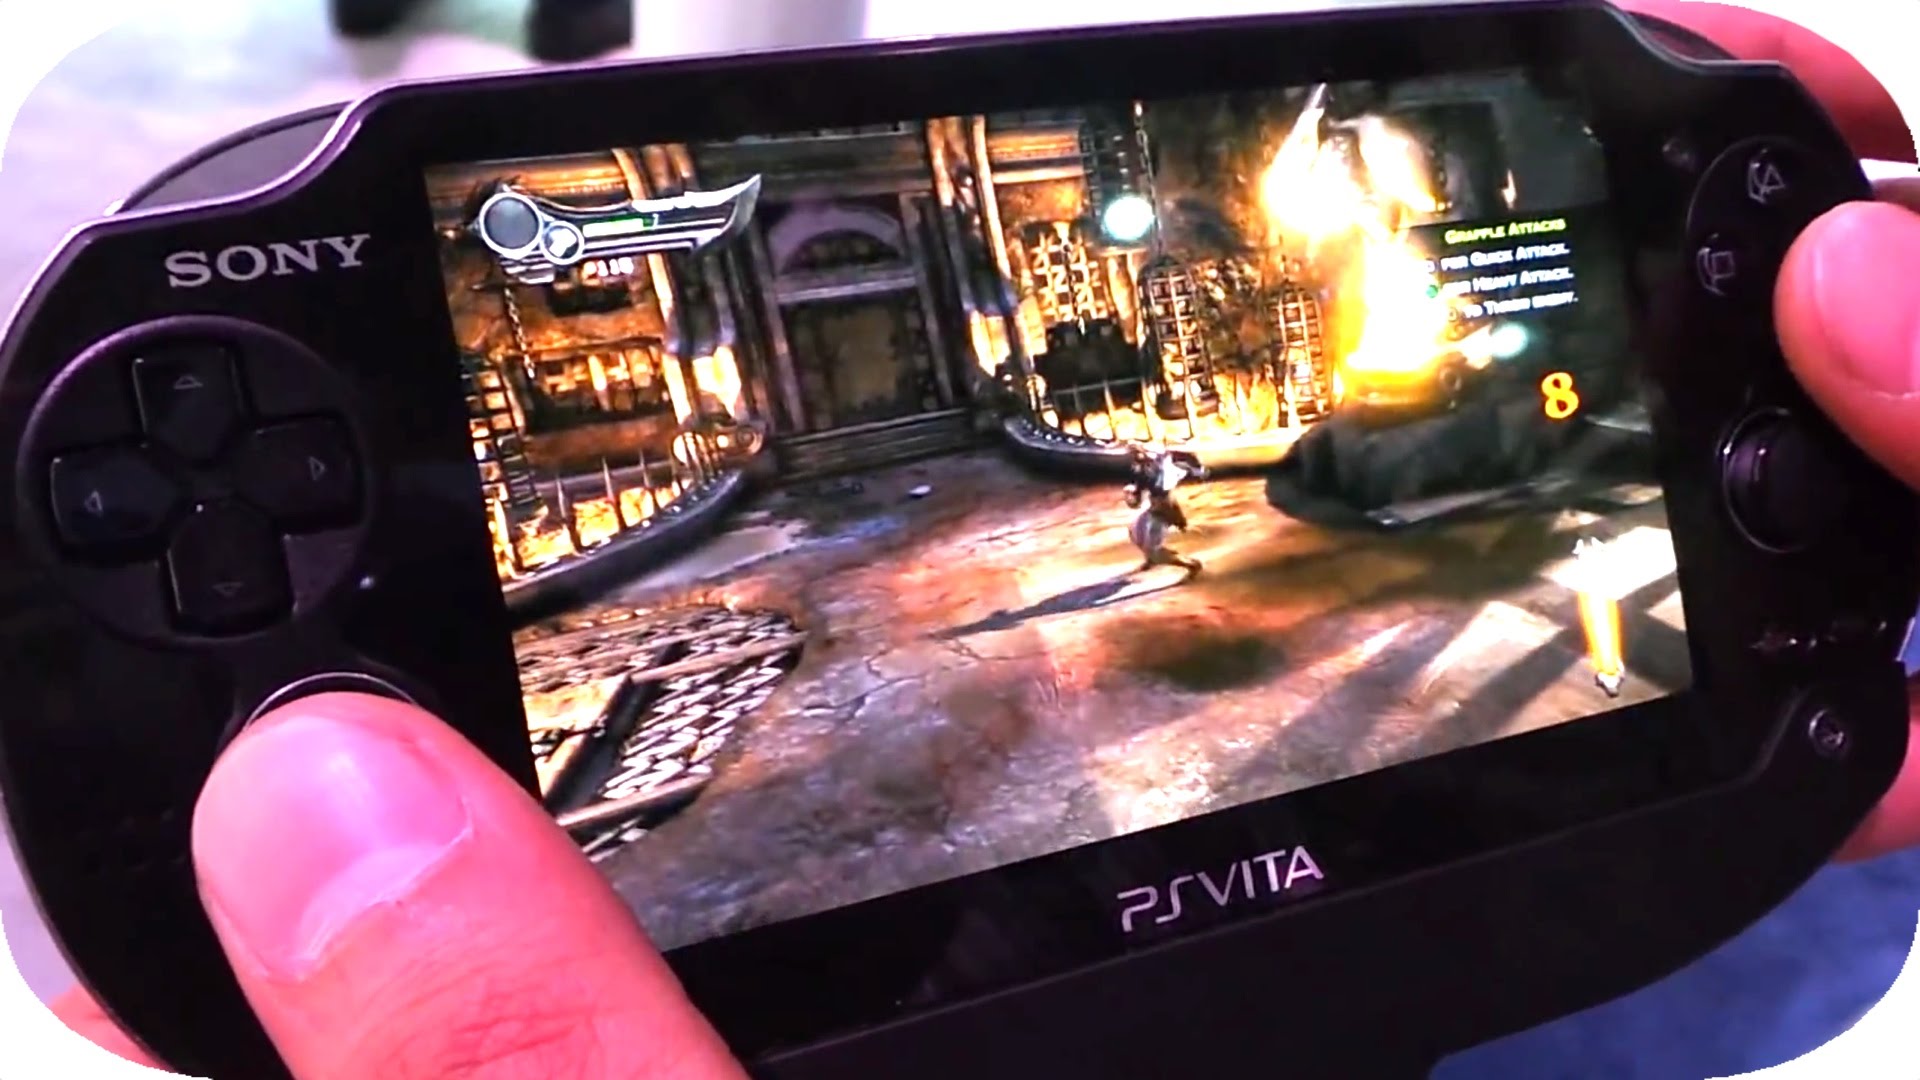 Dead ps vita. PS Vita 2. PS Vita ps5 Edition. Shu PS Vita. PS Vita ps3 games.